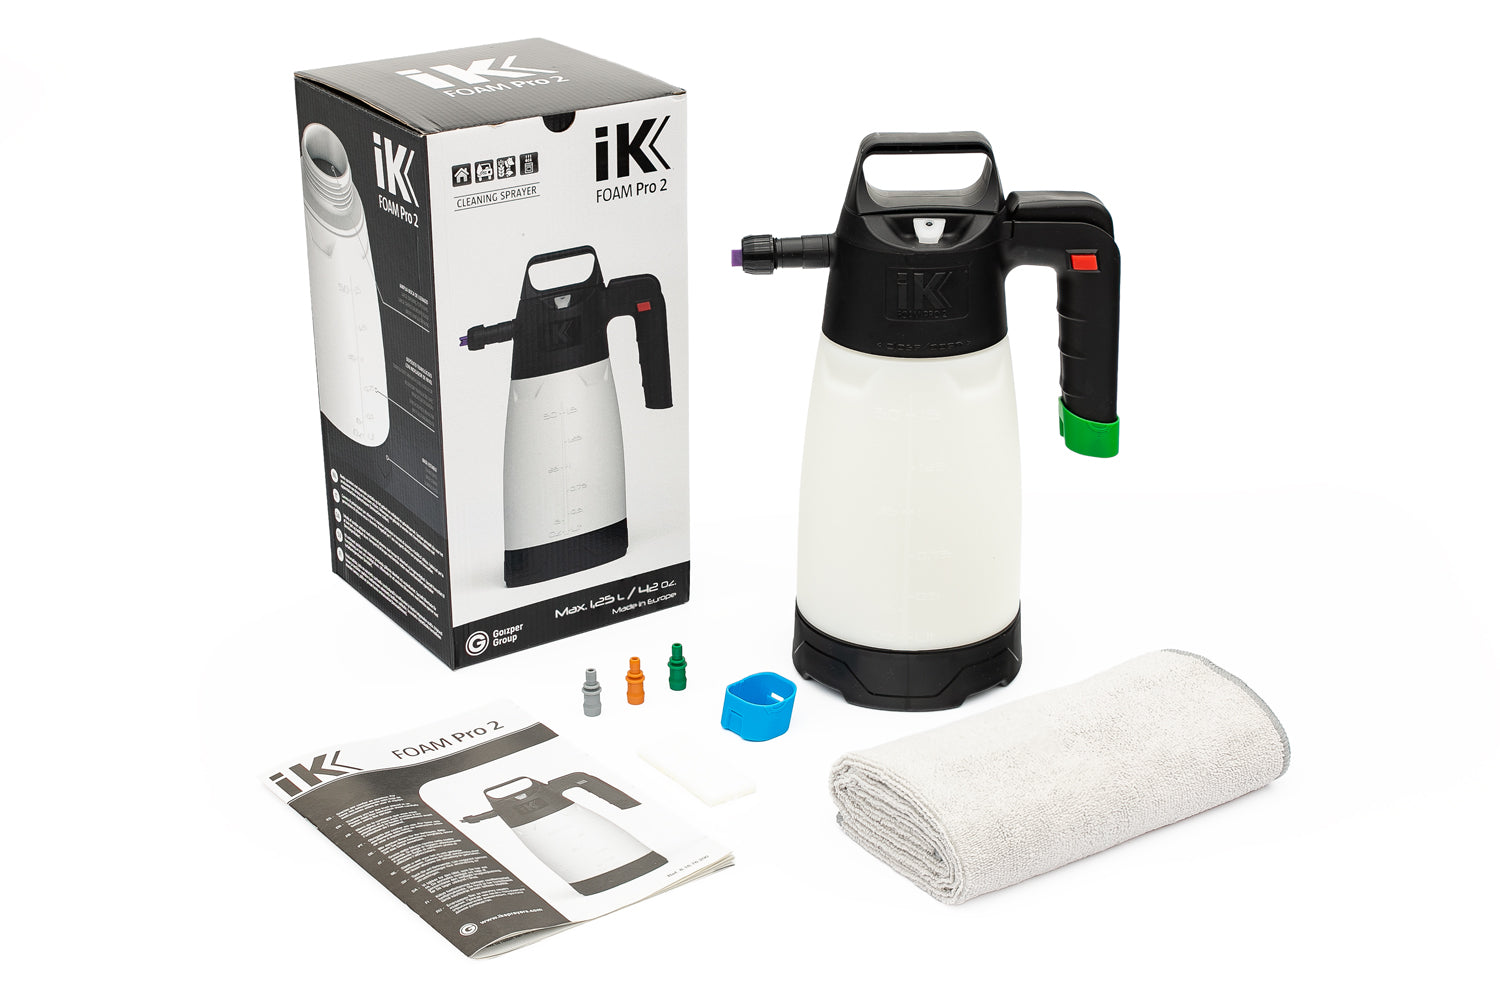 iK Foam Pro 2 - Sprayer